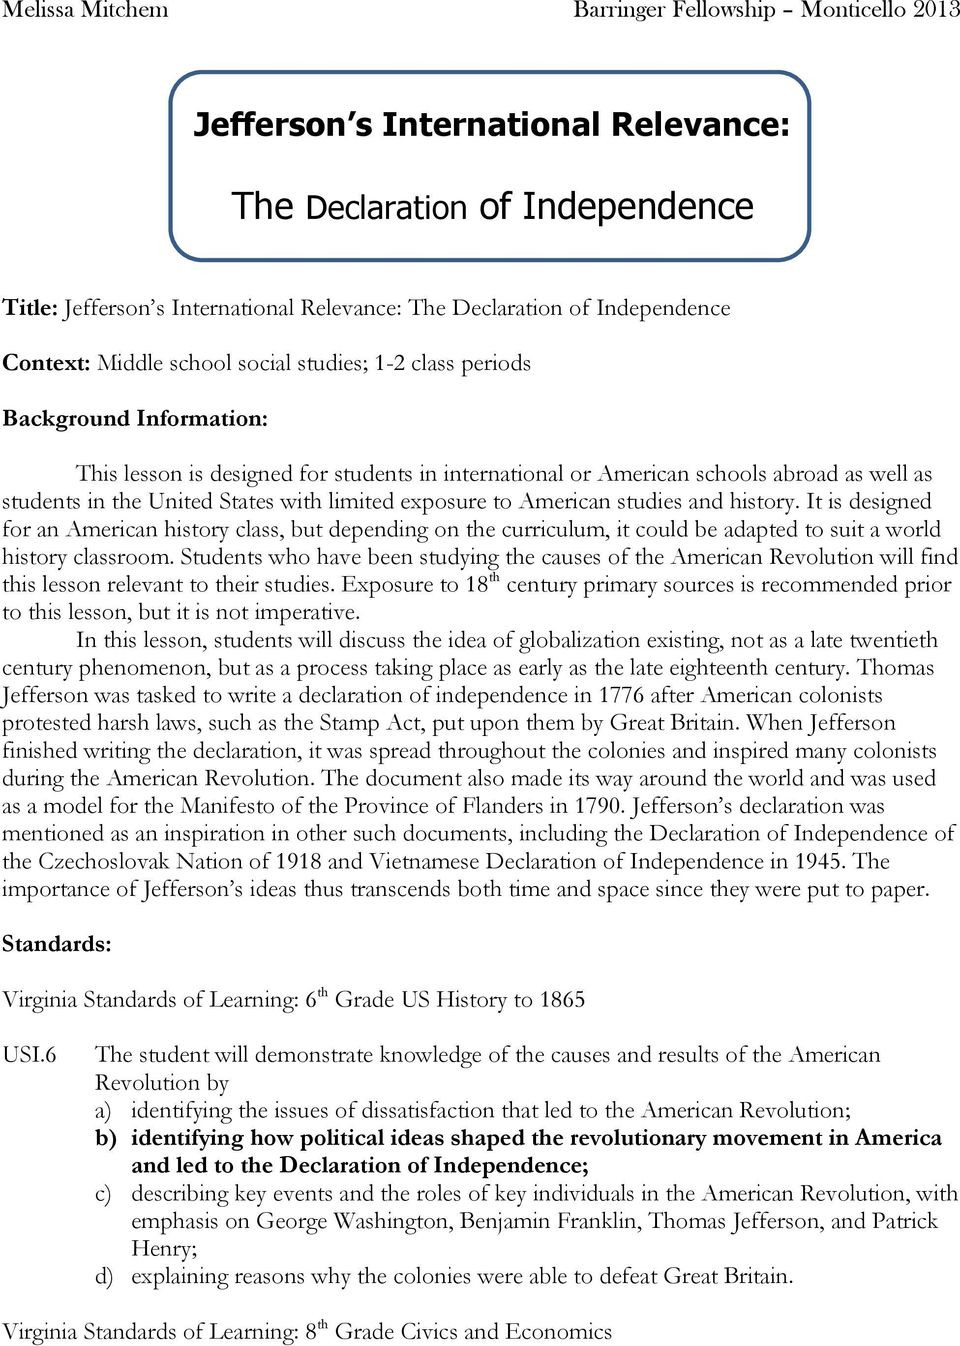 Declaration Of Independence Worksheet Fresh Declaration Independence Worksheet High School